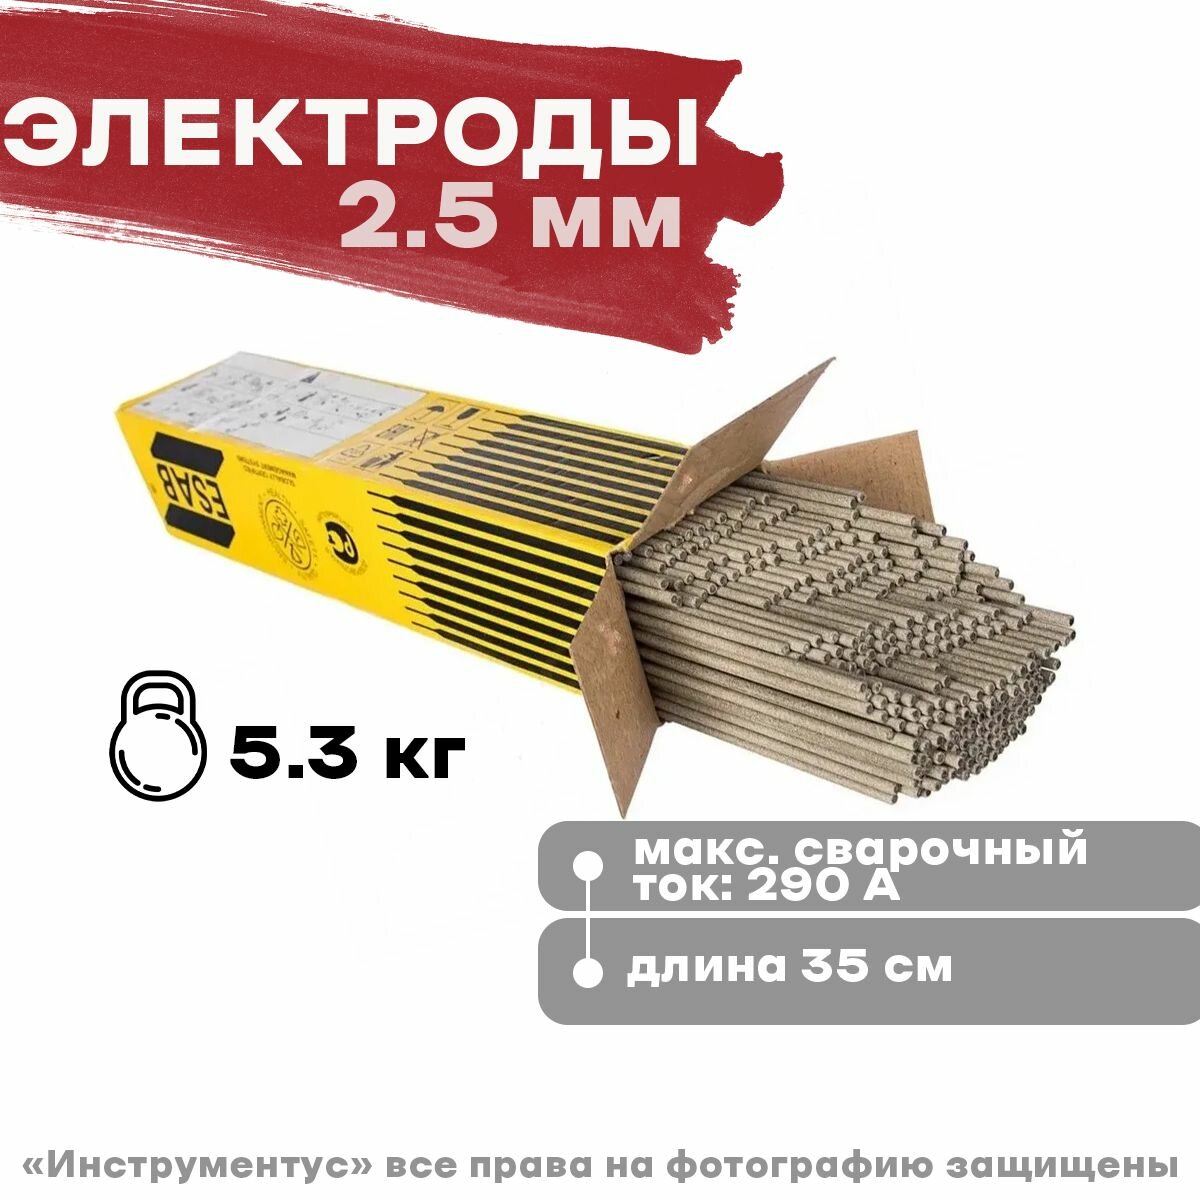 Электроды ESAB ОК 4600 д 25х350 53 кг цена за 53 кг